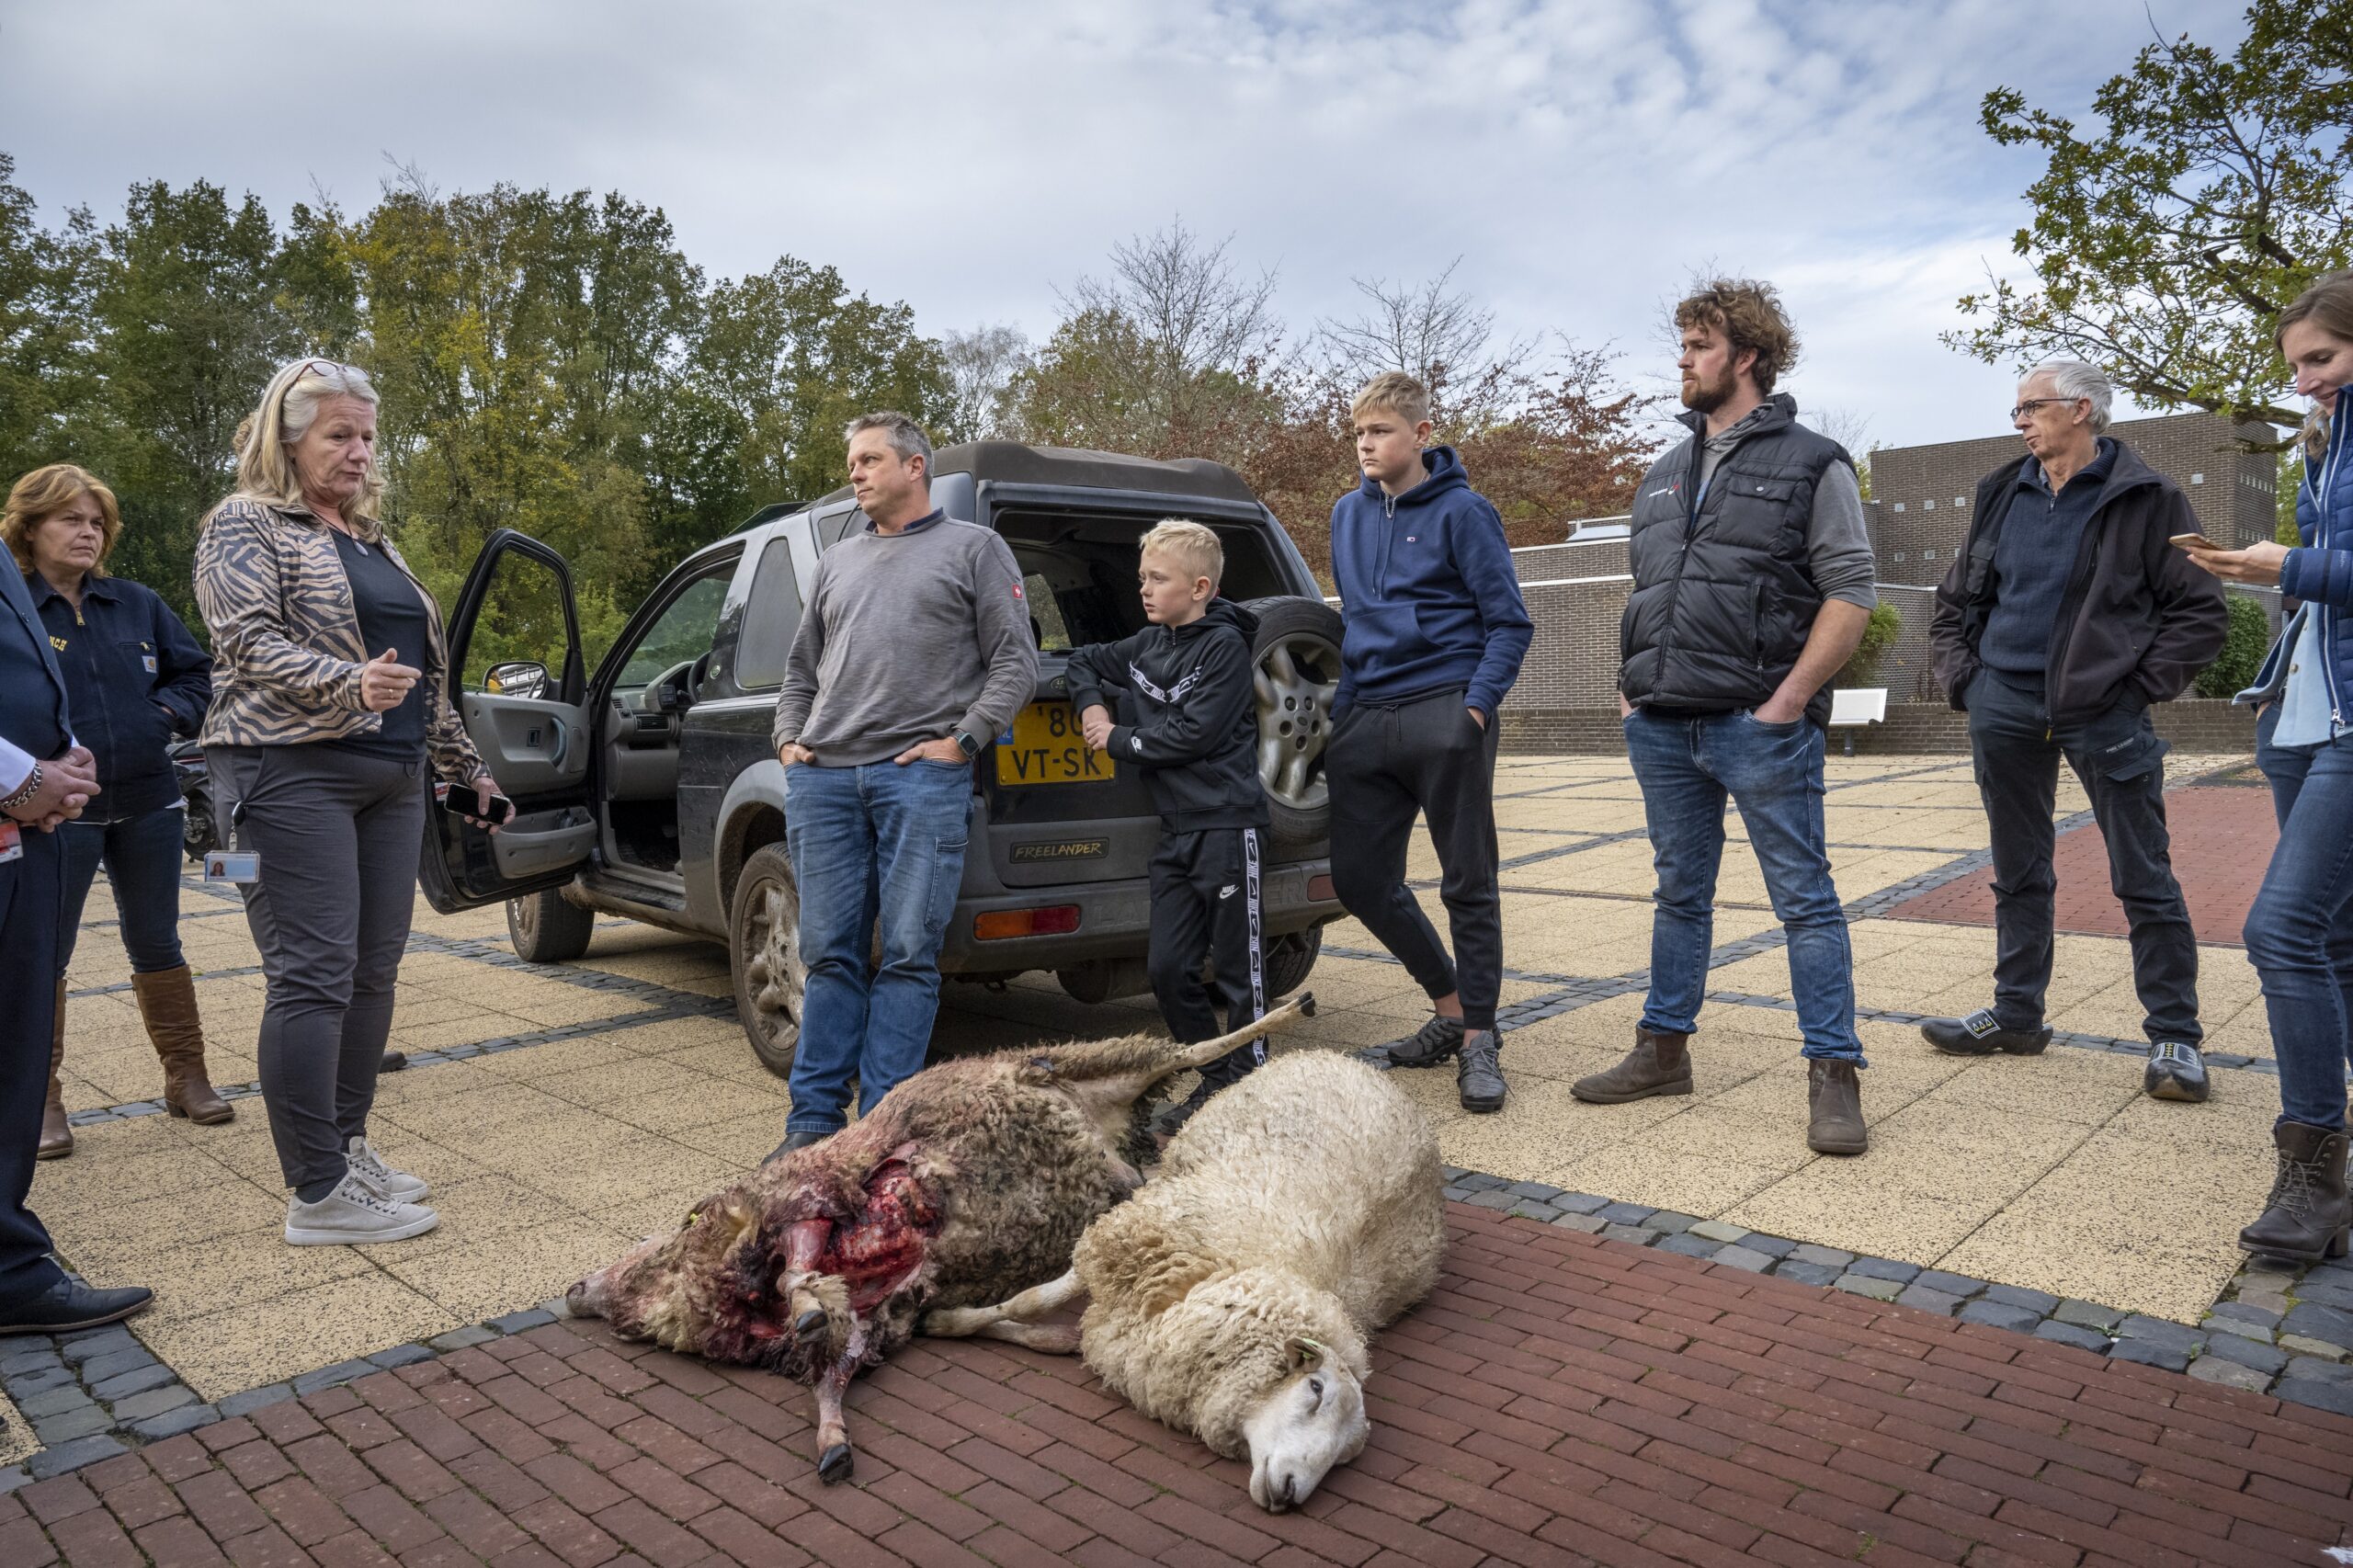 Dode schapen worden op de stoep gelegd van het provinciehuis in Assen. Volgens de eigenaar zijn de schapen gedood door een wolf. Foto: ANP/Jilmer Postma